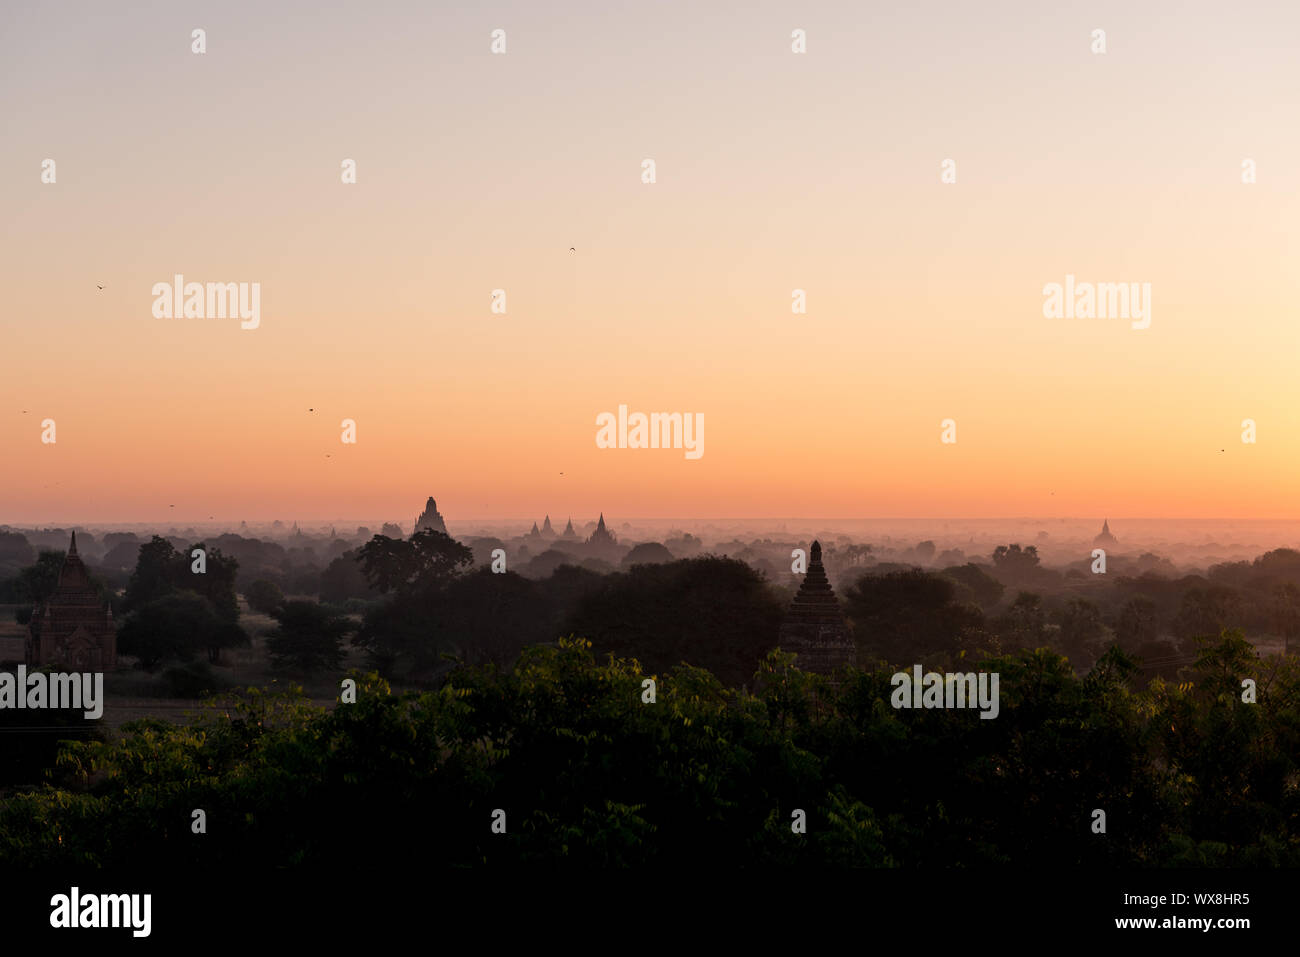 Immagine orizzontale di un idilliaco alba dalla parte superiore del vecchio tempio buddista situato a Bagan, Myanmar Foto Stock